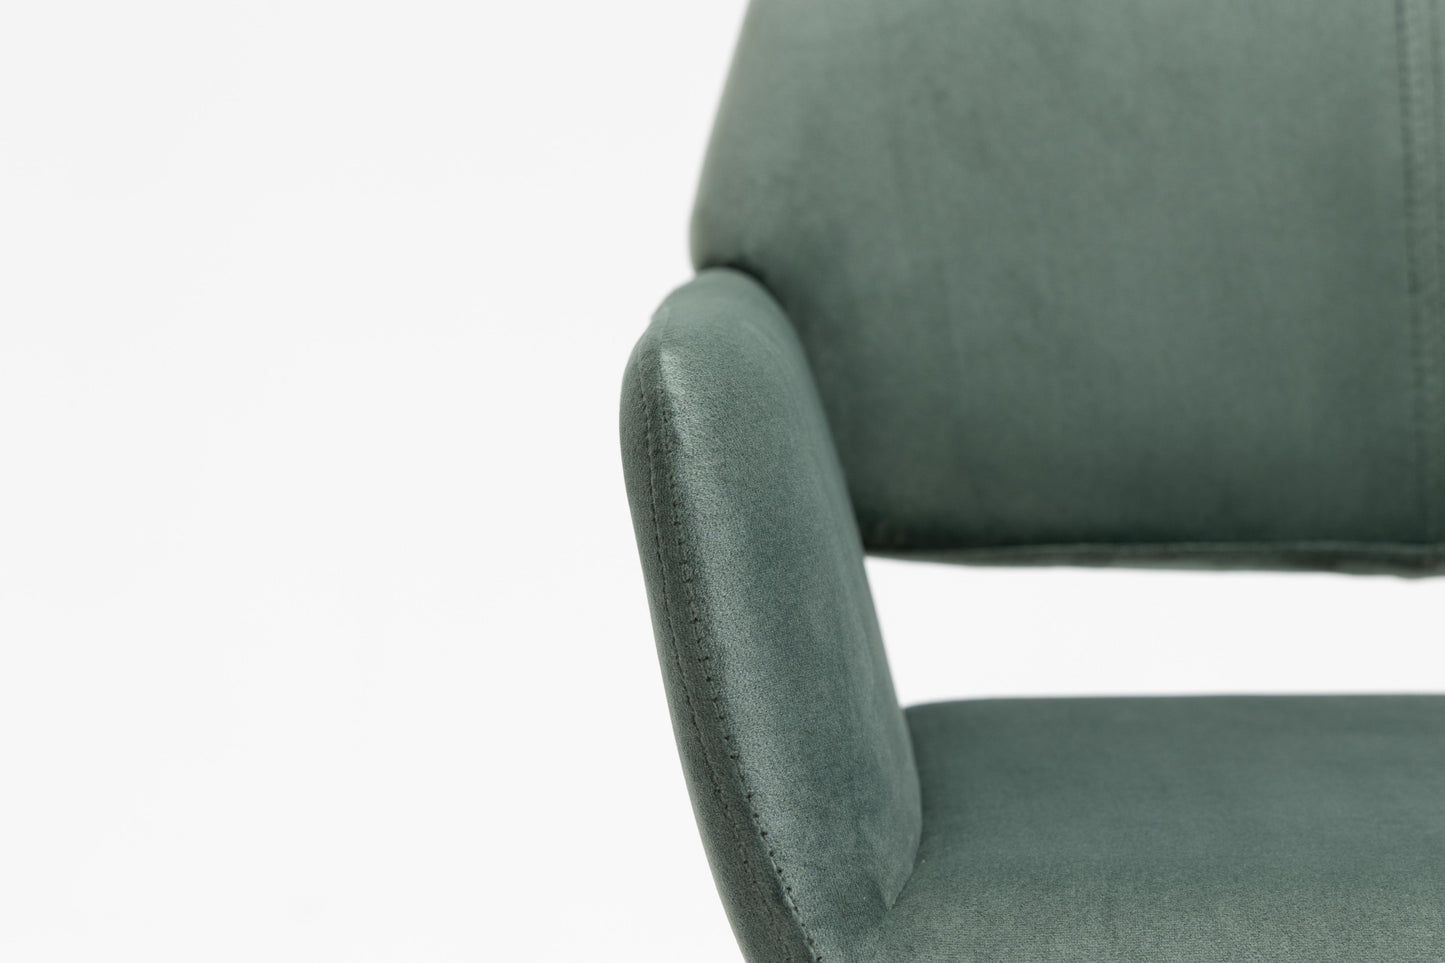 Green Upholstered Velvet Open Back Dining Chair